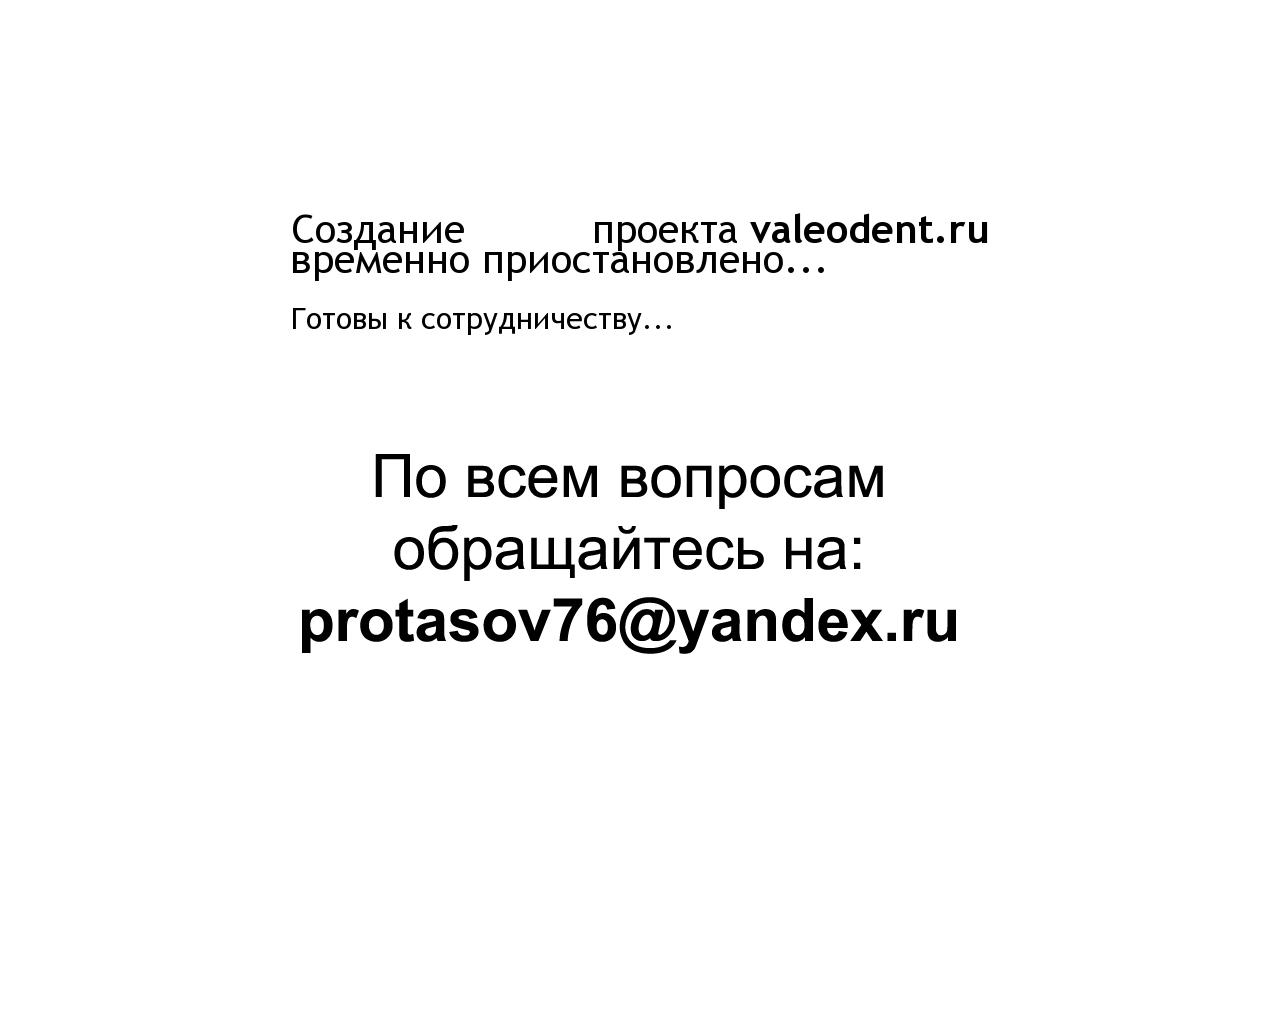 Изображение сайта valeodent.ru в разрешении 1280x1024